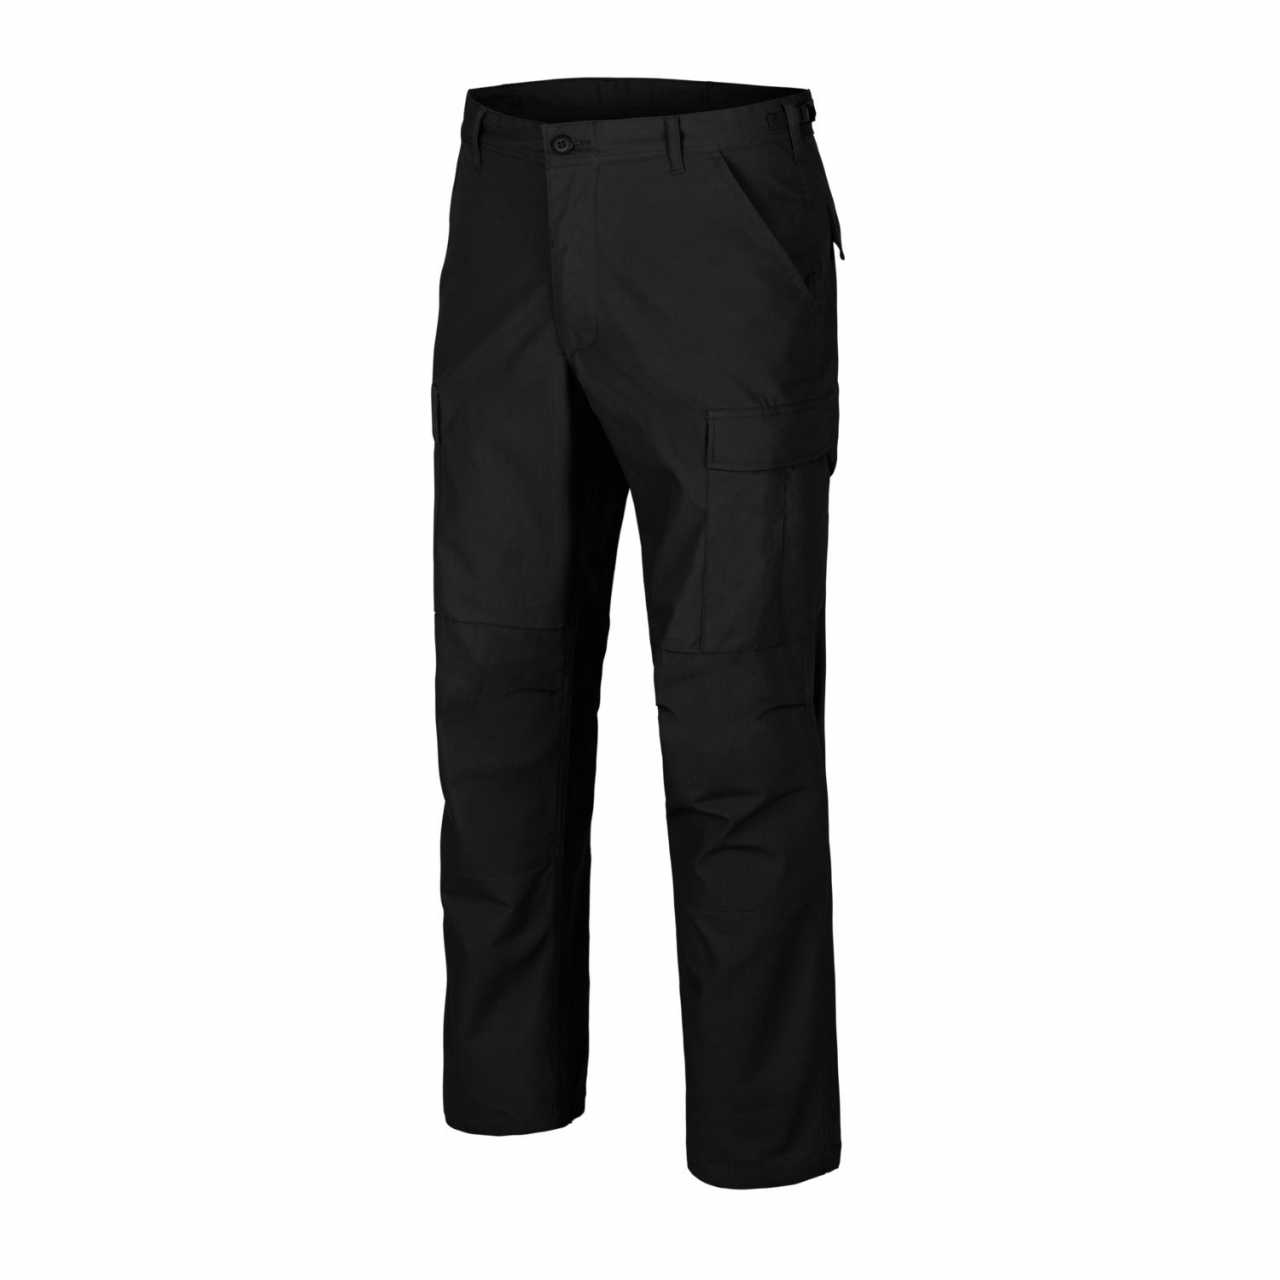 Kalhoty Helikon BDU Pants Poly Ripstop - černé, S Long